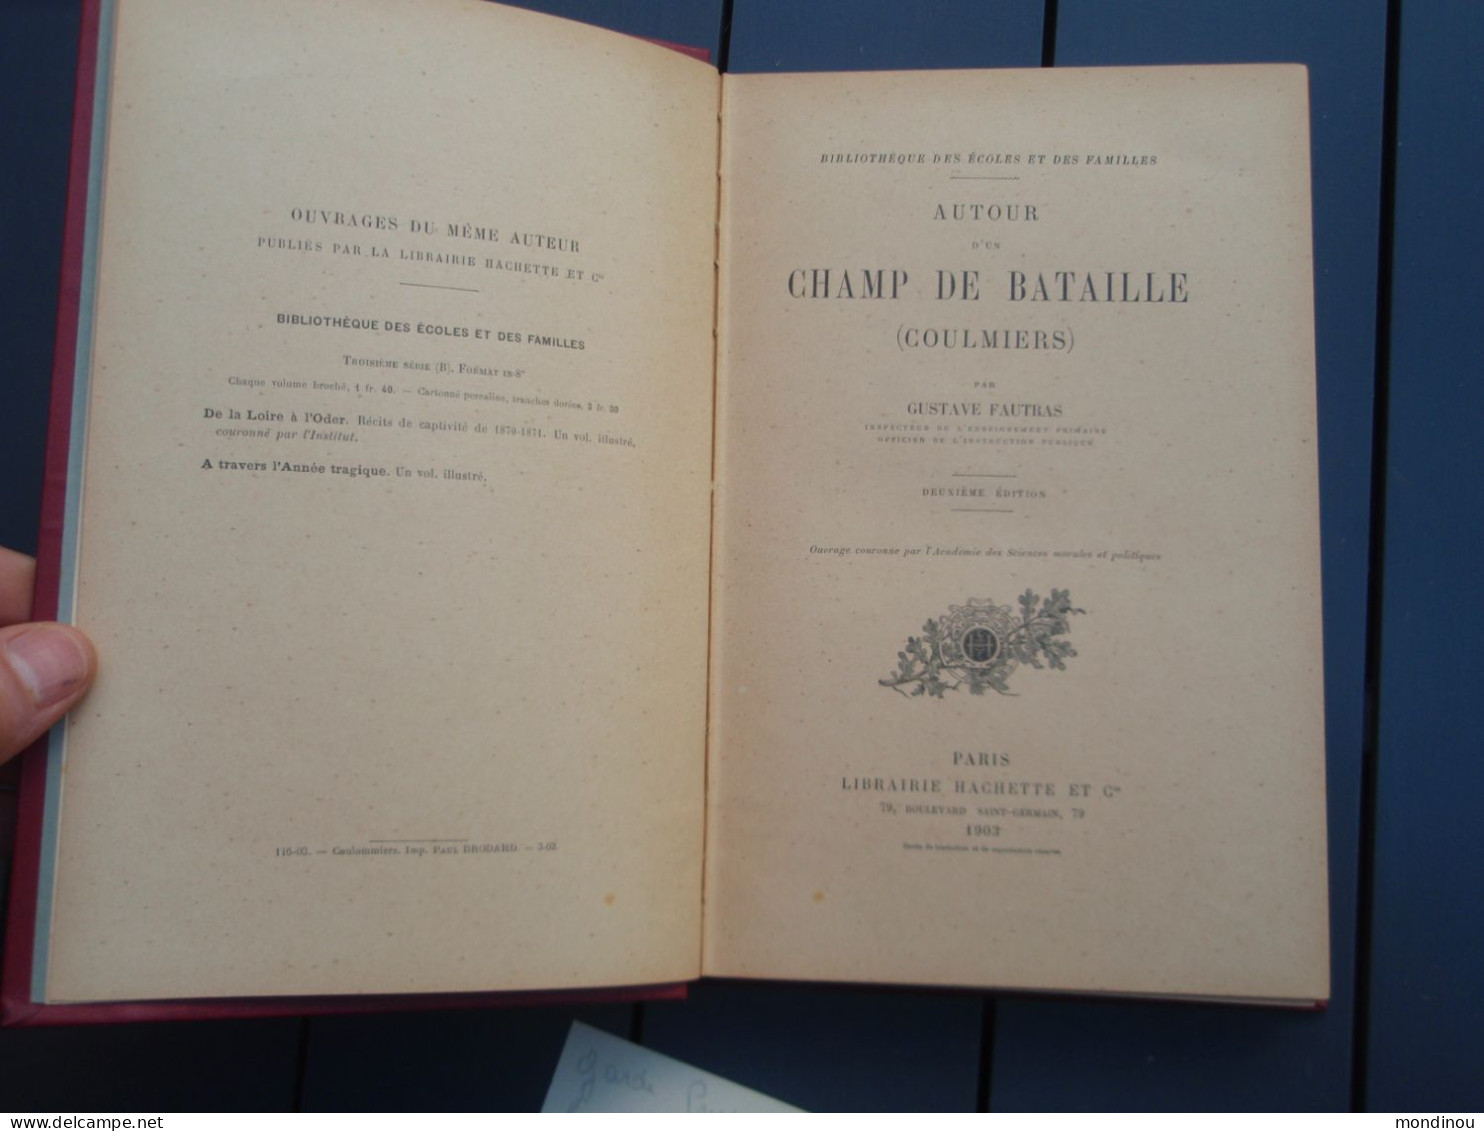 Autour D'un Champ De Bataille (COULMIERS) Guerre De 1870, Par Gustave FAUTRAS. Deuxième édition. - French